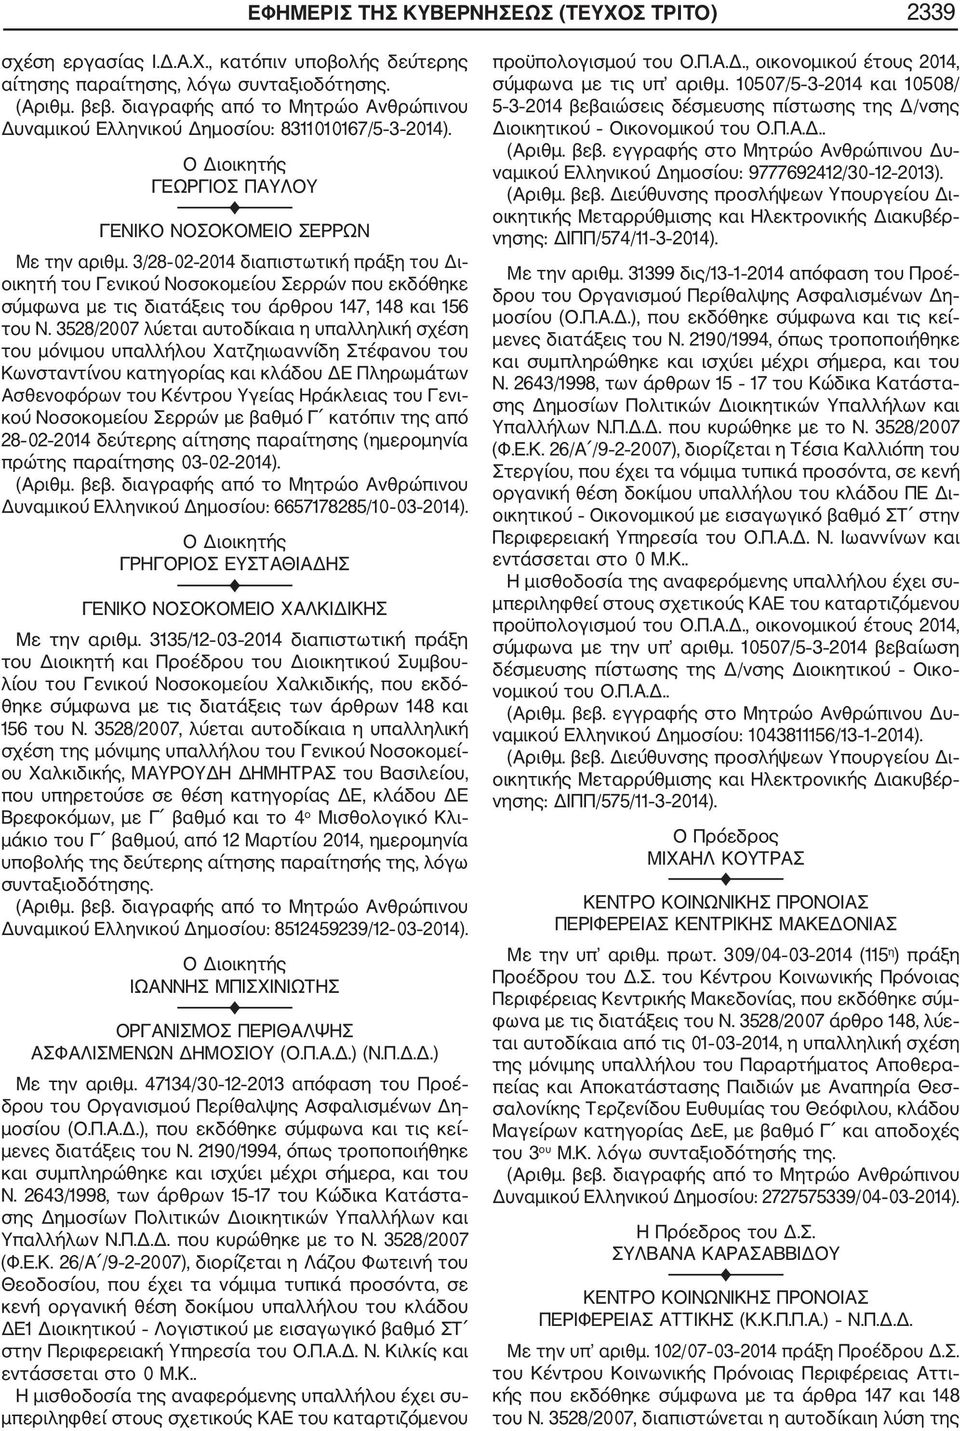 3/28 02 2014 διαπιστωτική πράξη του Δι οικητή του Γενικού Νοσοκομείου Σερρών που εκδόθηκε σύμφωνα με τις διατάξεις του άρθρου 147, 148 και 156 του Ν.